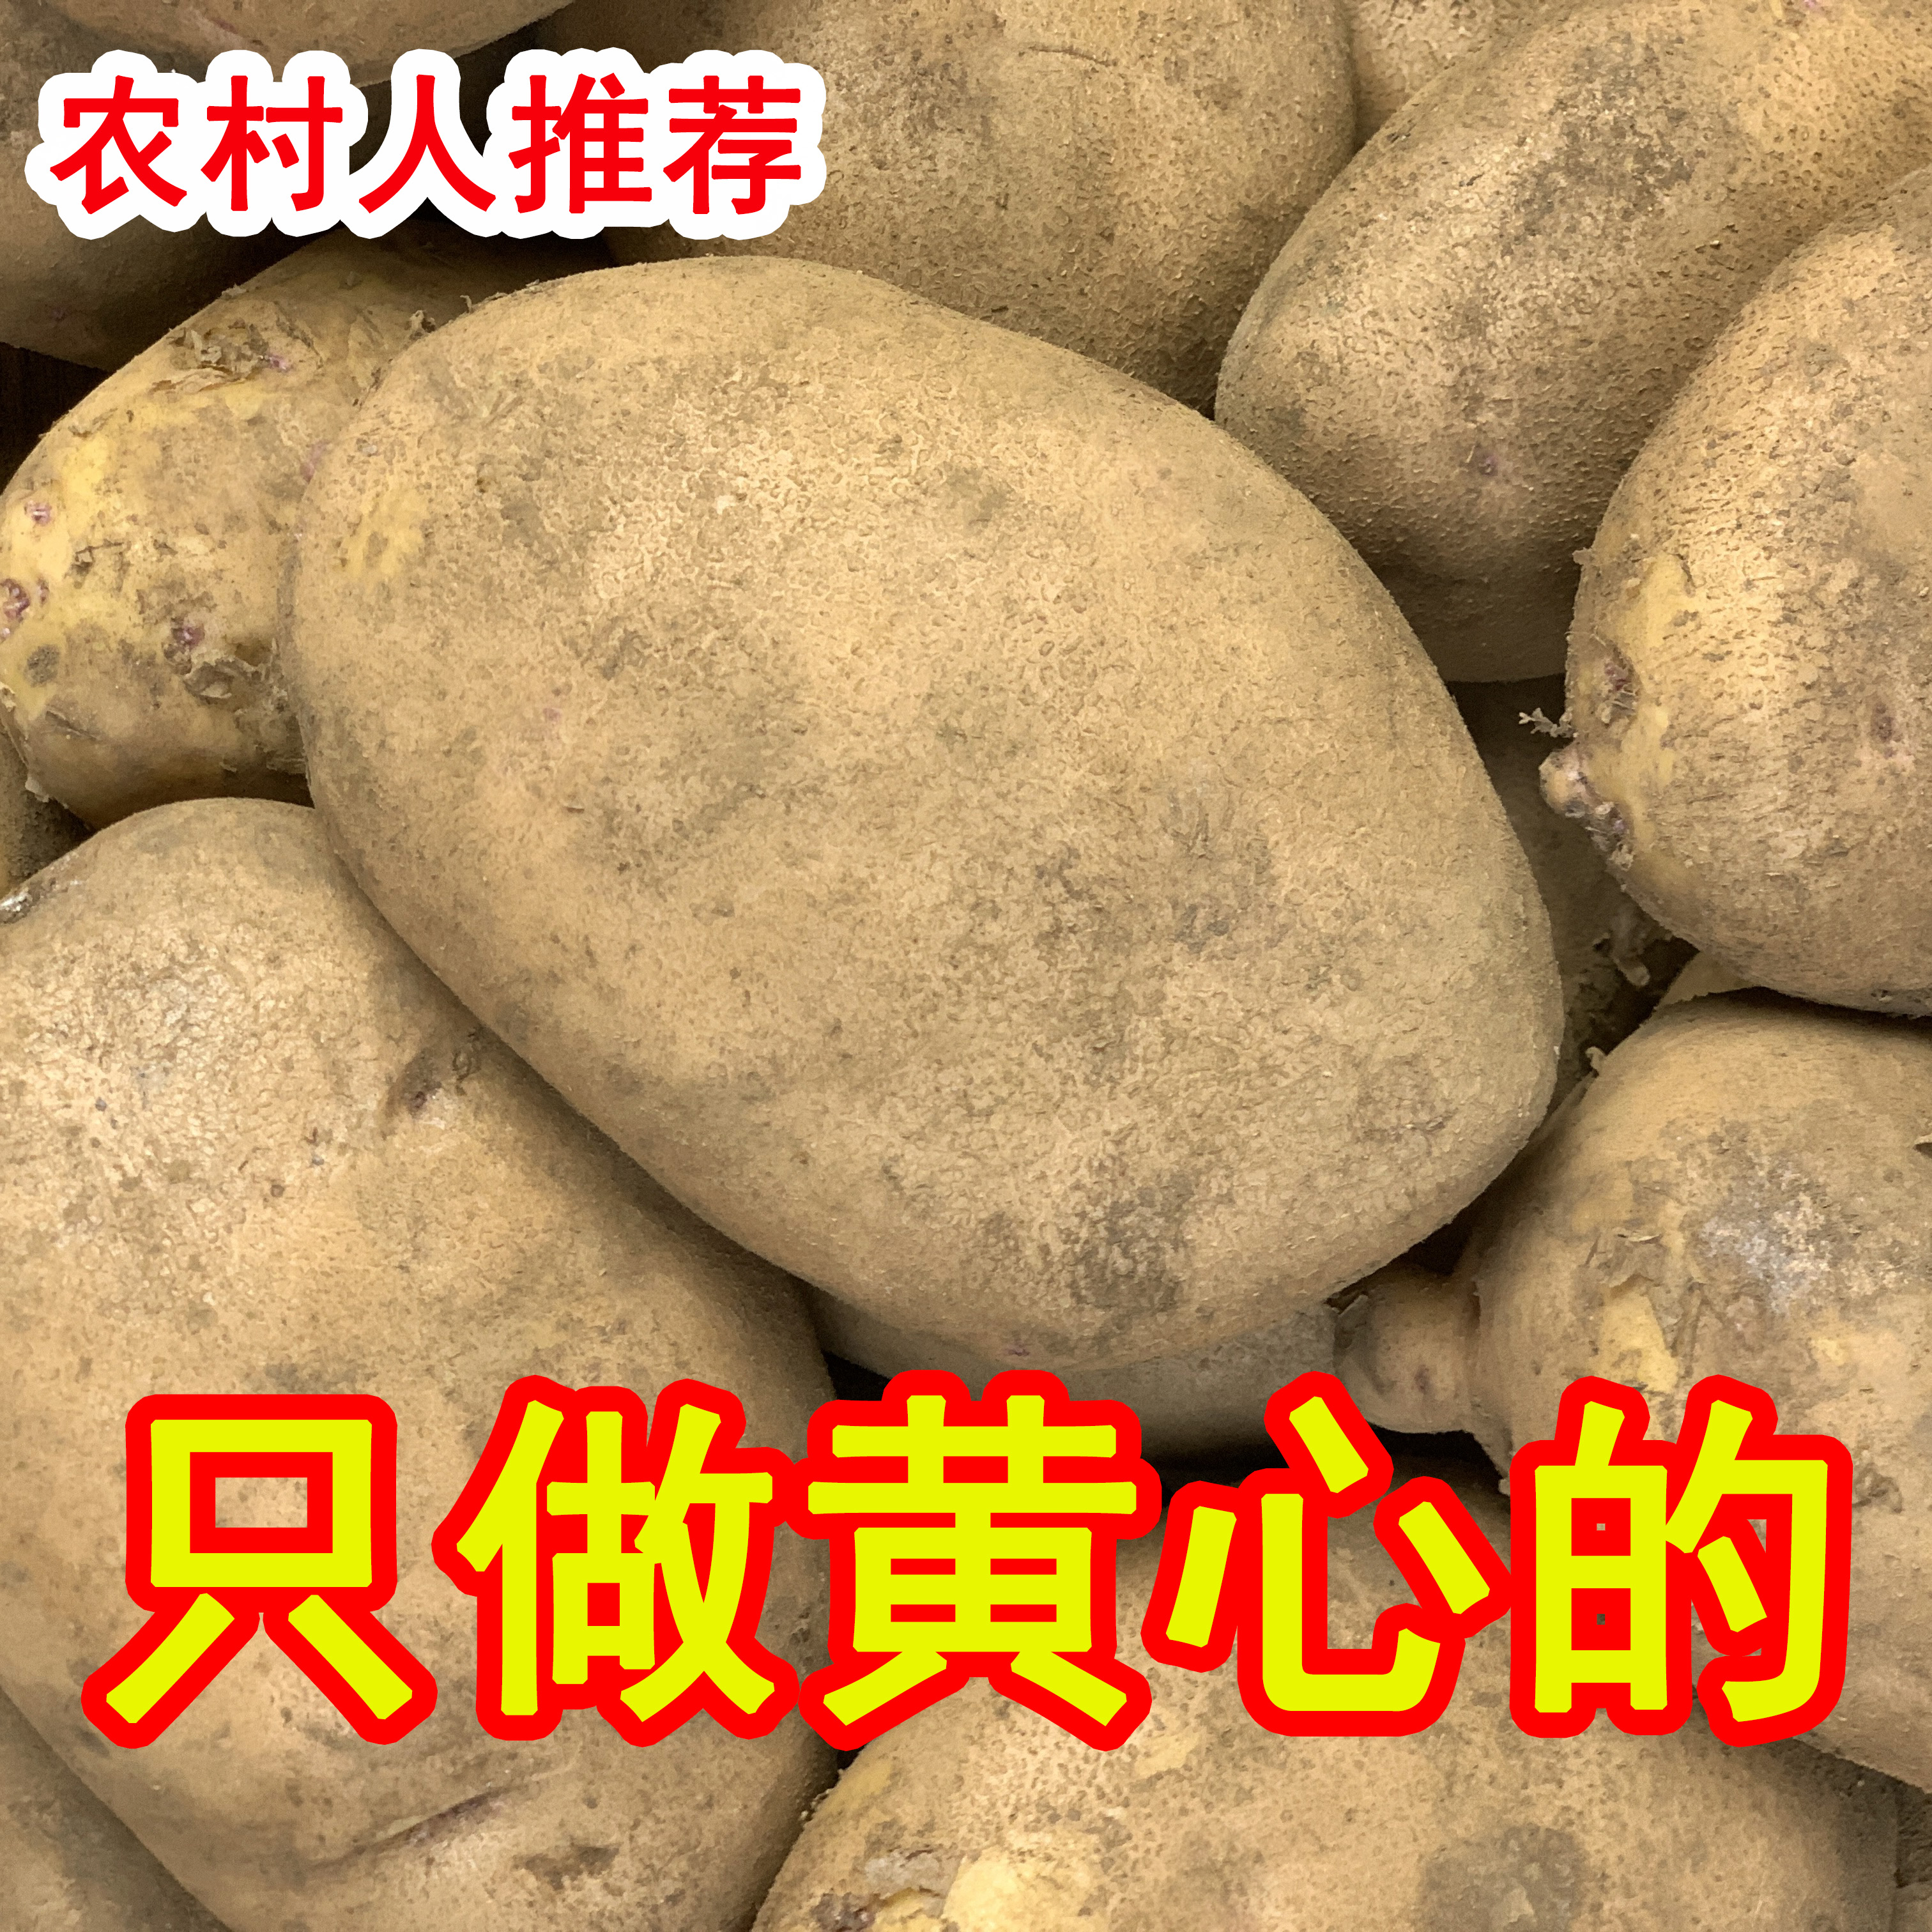 新鲜土豆洋芋贵州农村高山梯田无污染农民种老家味道产地包邮直发